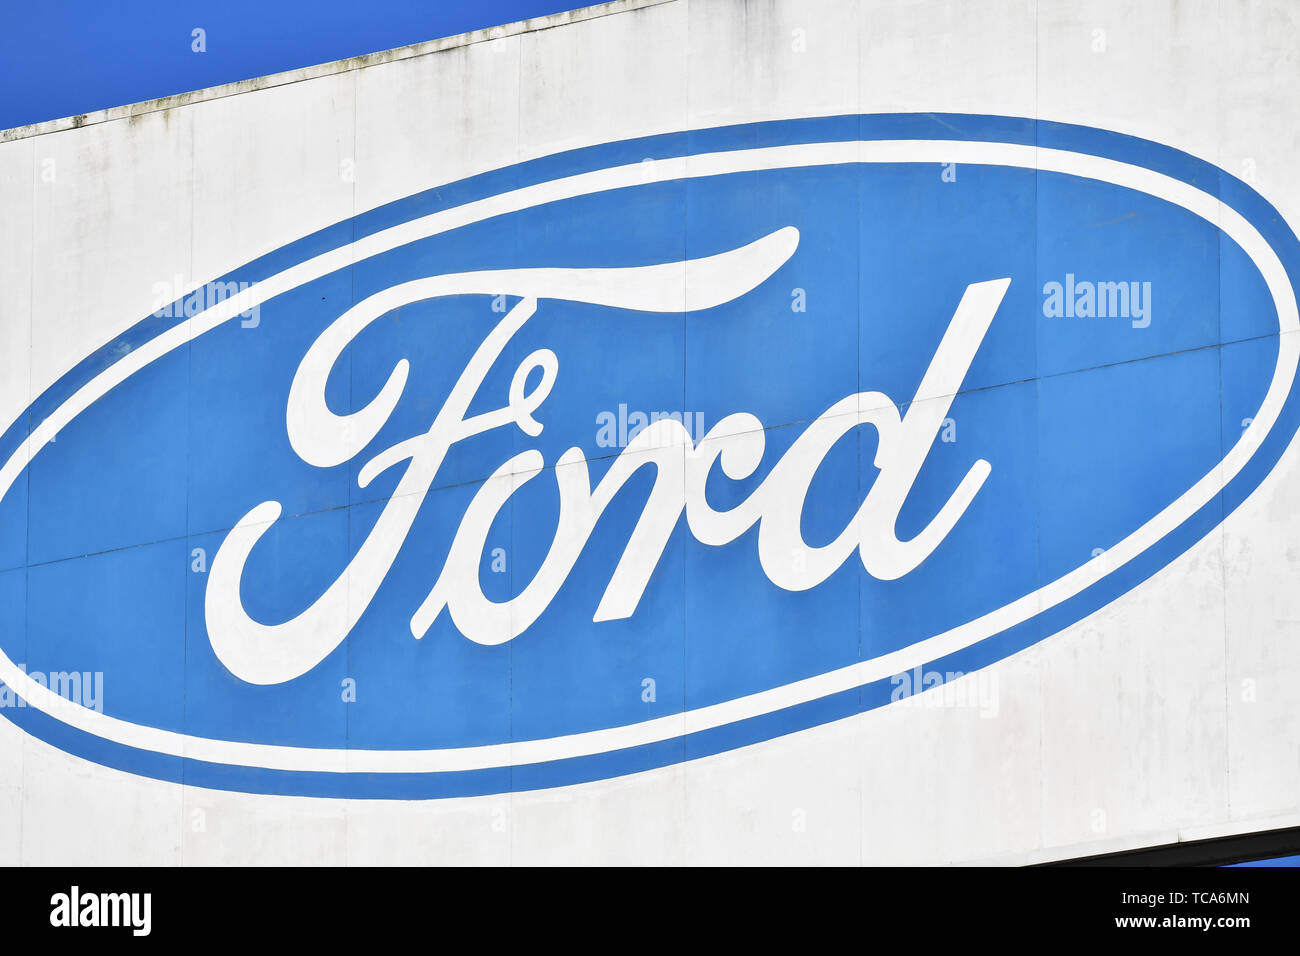 Der Ford Logo in der Ford Motor plant in der Nähe von Bridgend, South Wales, wo rund 1.500 Arbeitsplätze betroffen sind, wie die Gewerkschaften haben Schock bei einem erwarteten Ankündigung, dass die Auto Riese ist einer der britischen Fabriken mit schwere Arbeitsplatzverluste zu schließen. Stockfoto